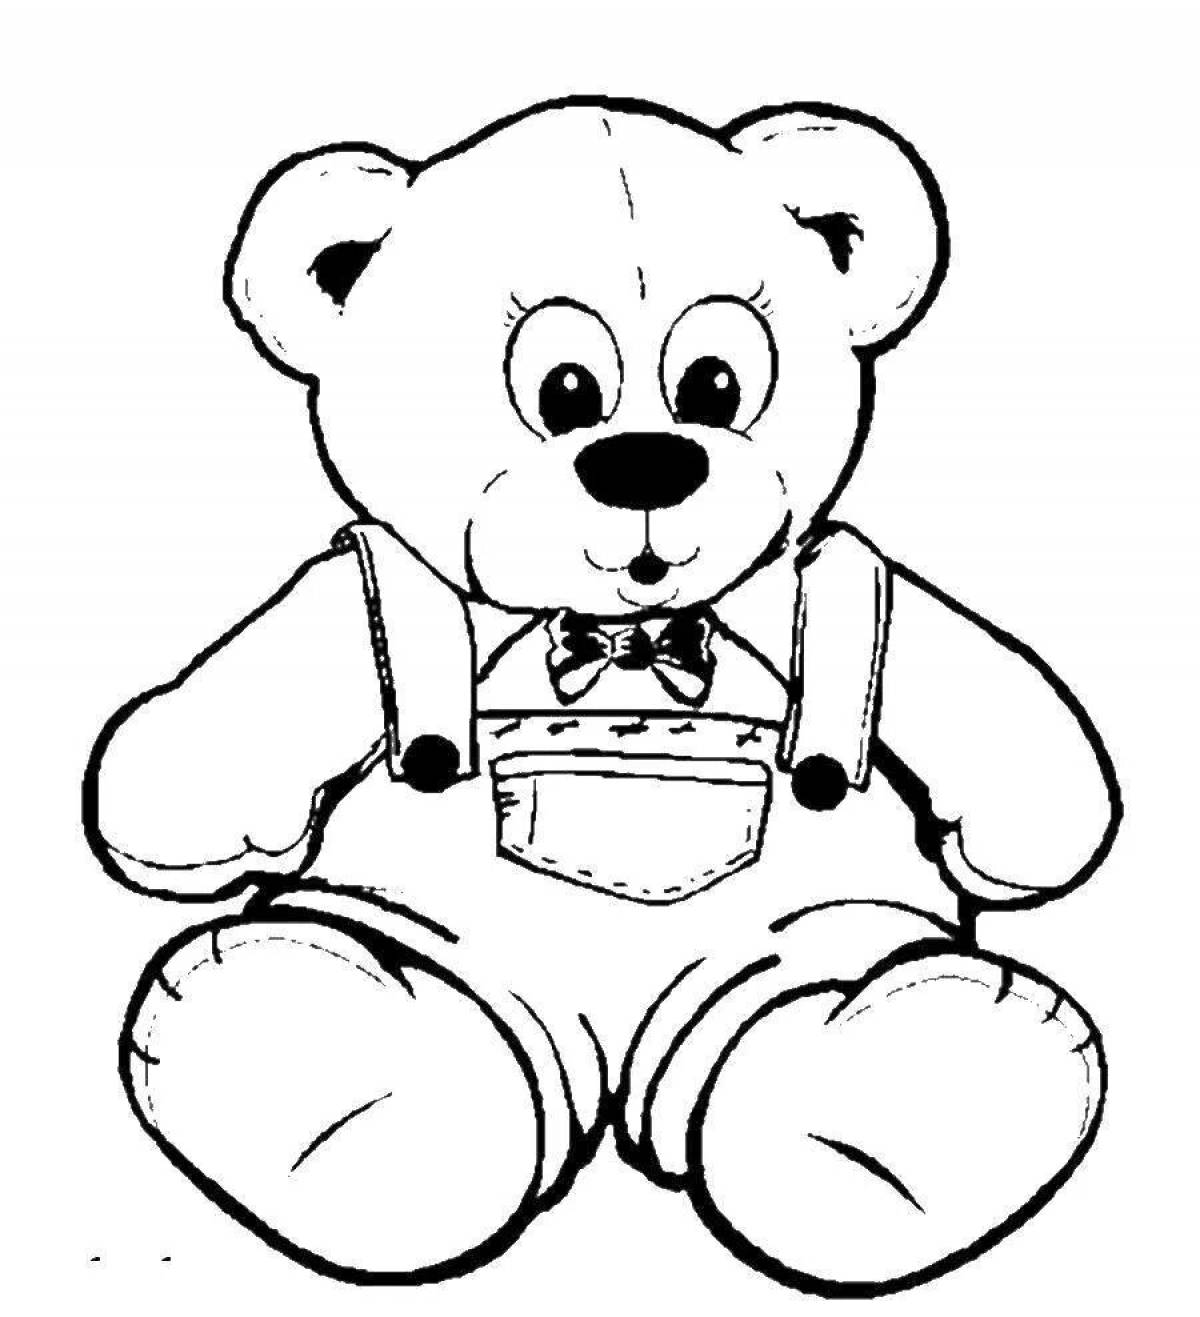 Teddy bear #4